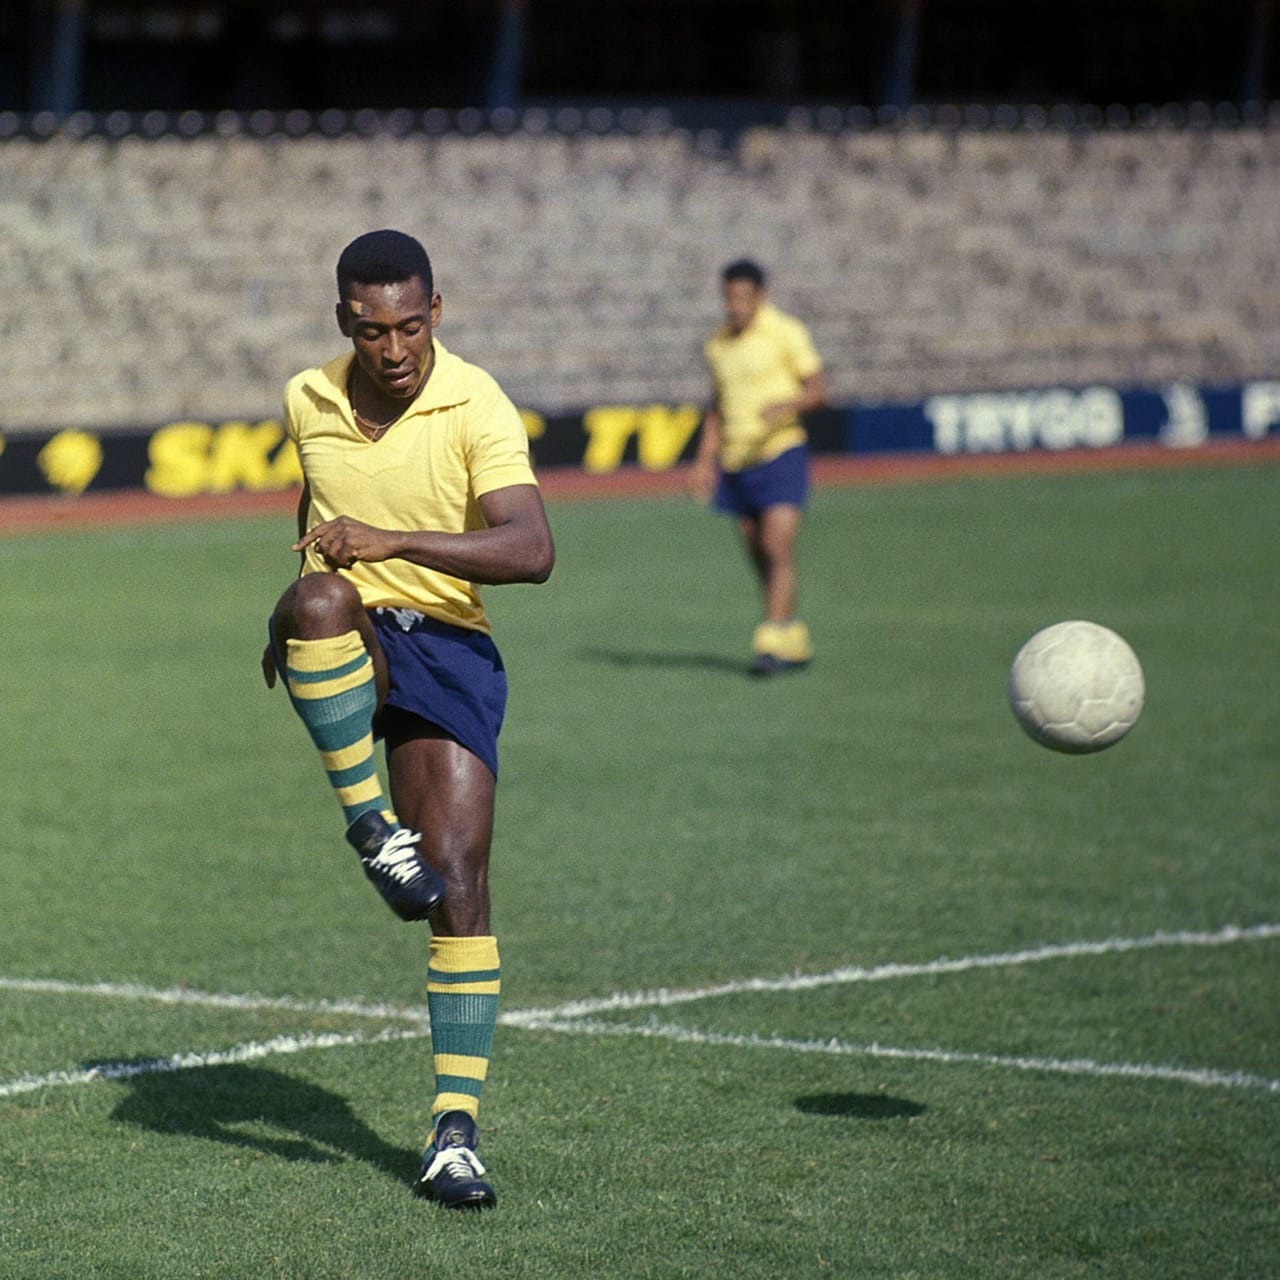 monde 1966: Tous contre le Brésil de Pelé, qui s'est retrouvé blessé